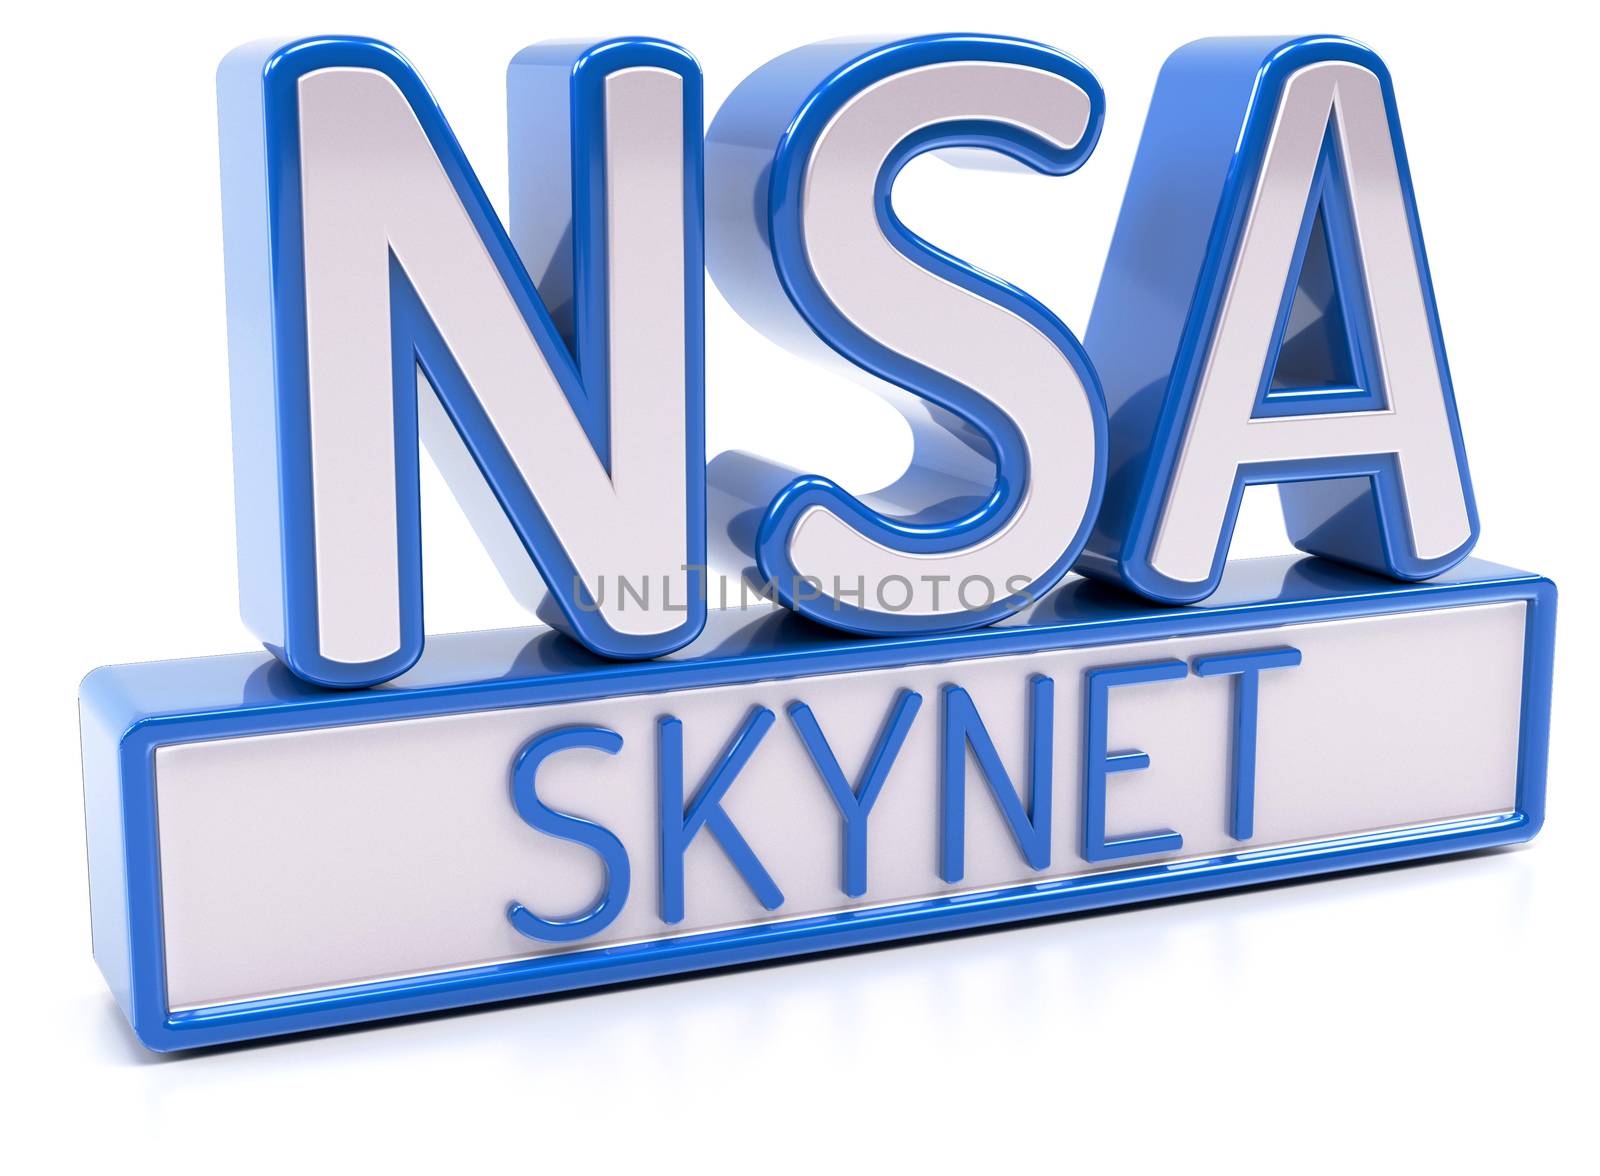 NSA SKYNET by akaprinay